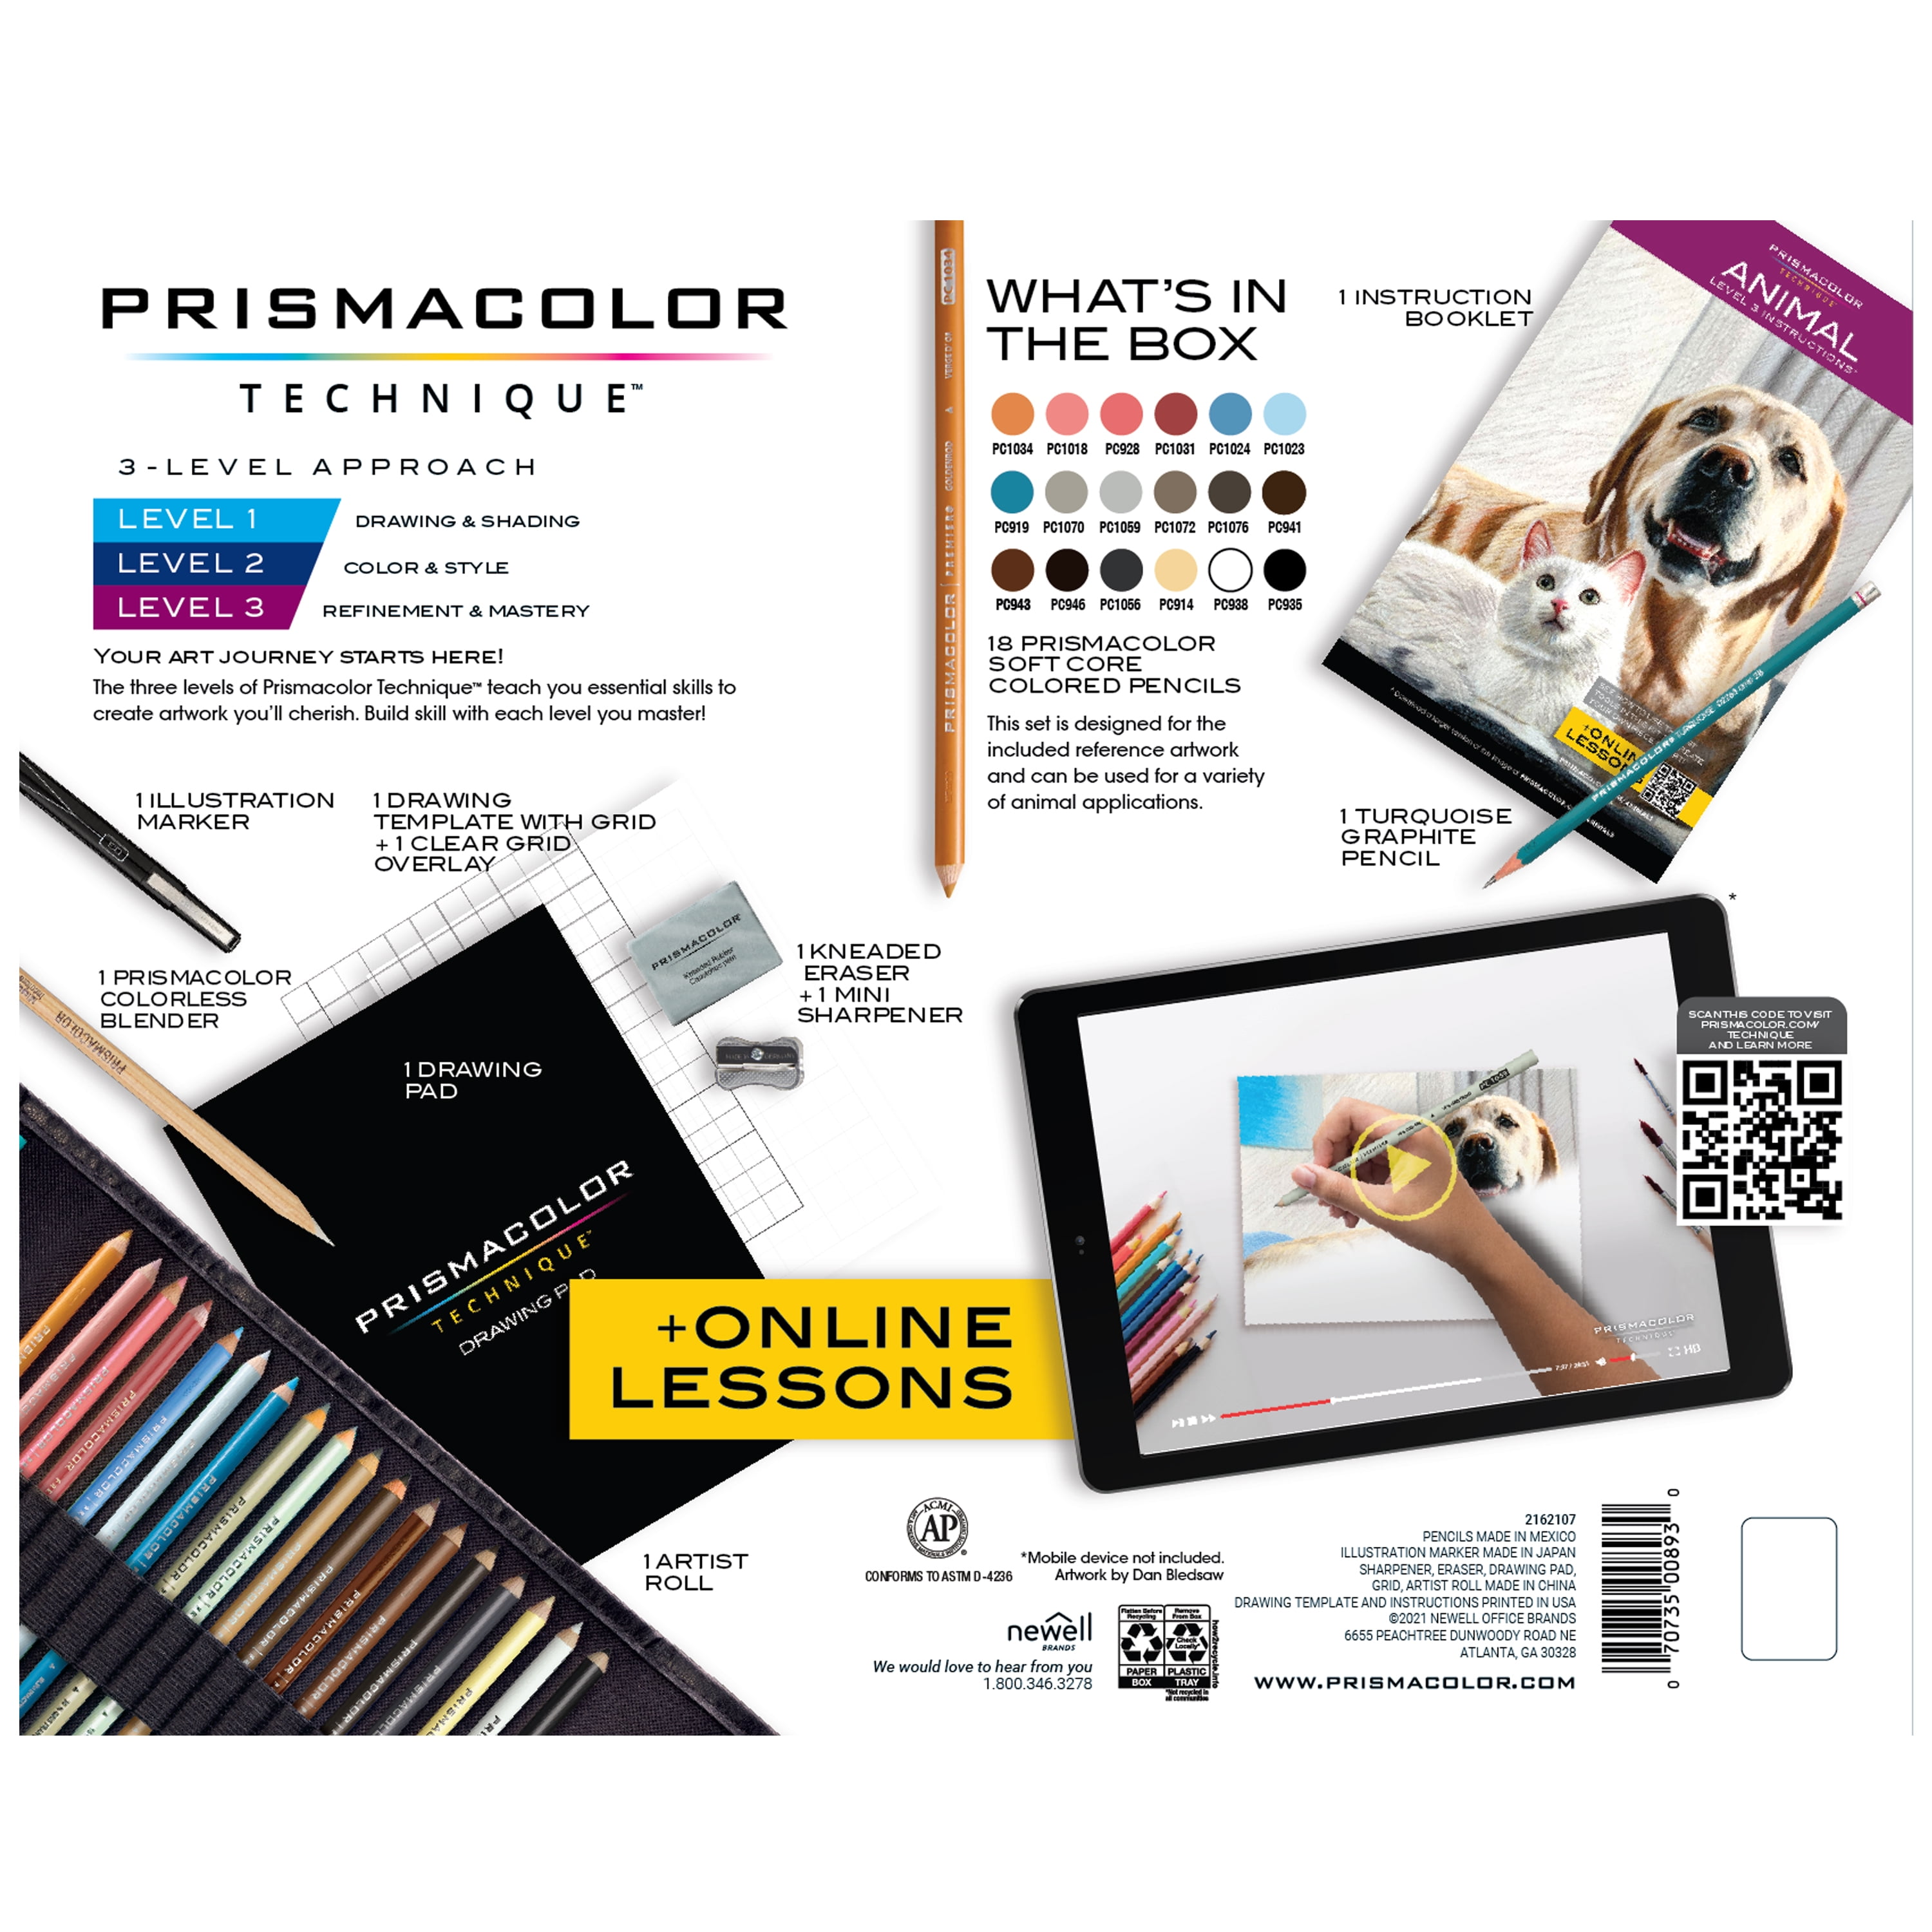 Prismacolor Technique, Art Supplies with Digital Drawings Set, 26 Ct &  Technique, Art Supplies and Digital Art Lessons, Animal Drawings Set, Level  2